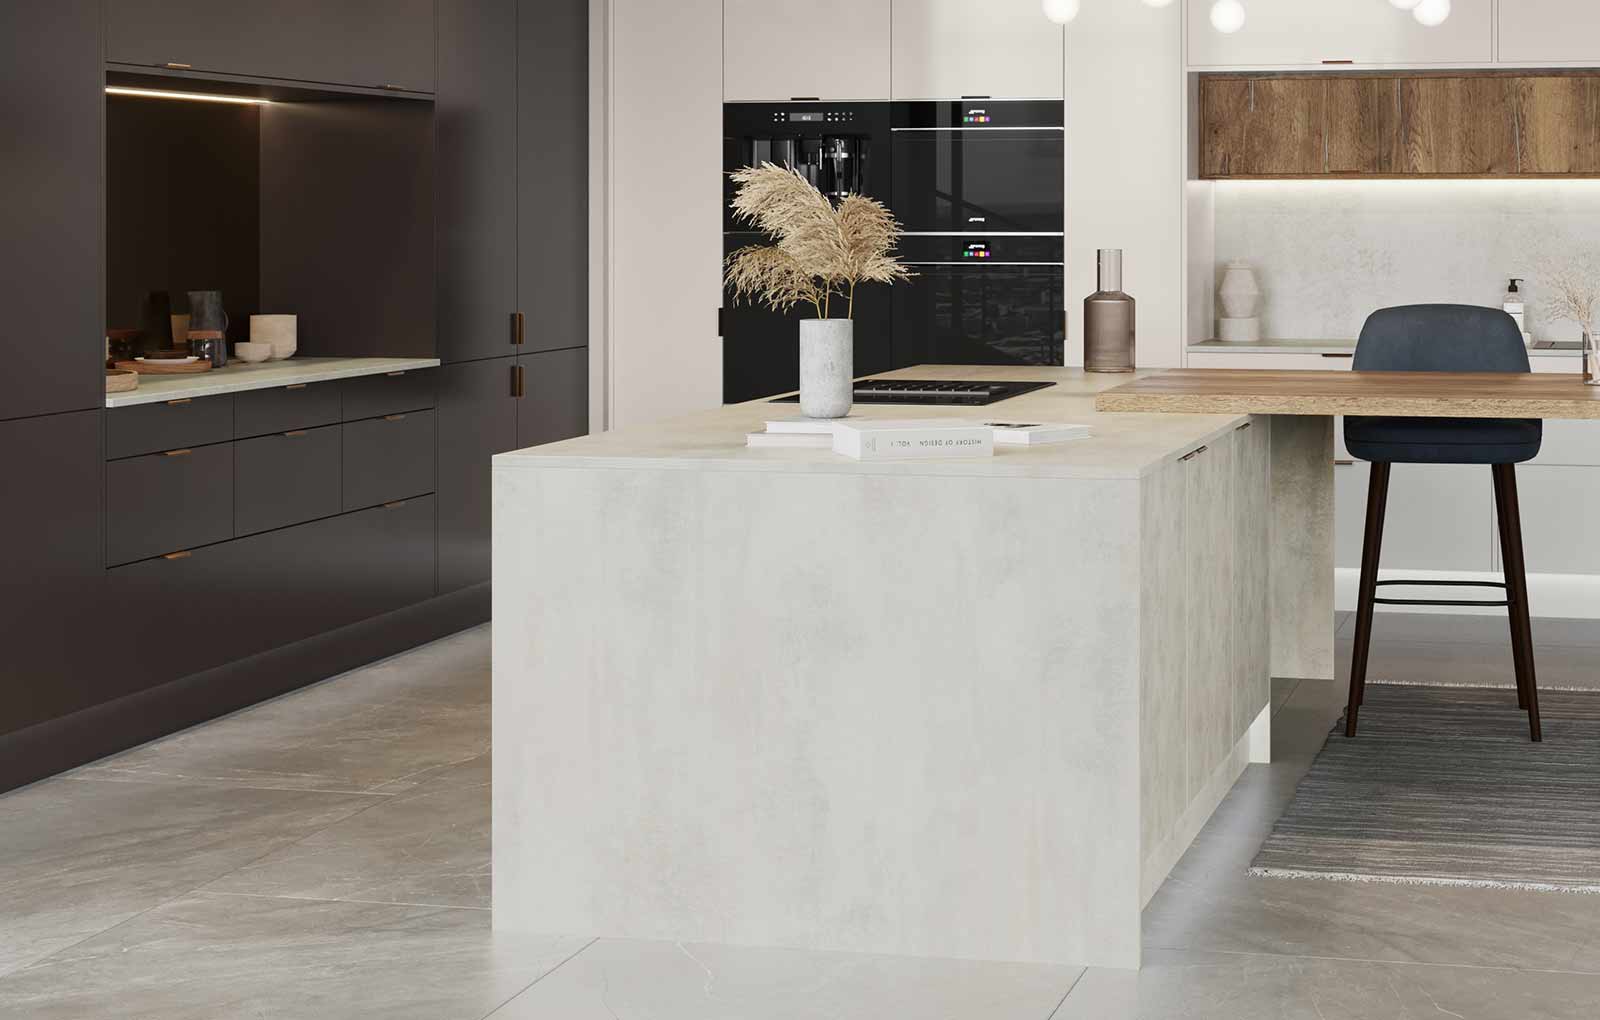 White concrete effect modern kitchen paired with dark kitchen cabients